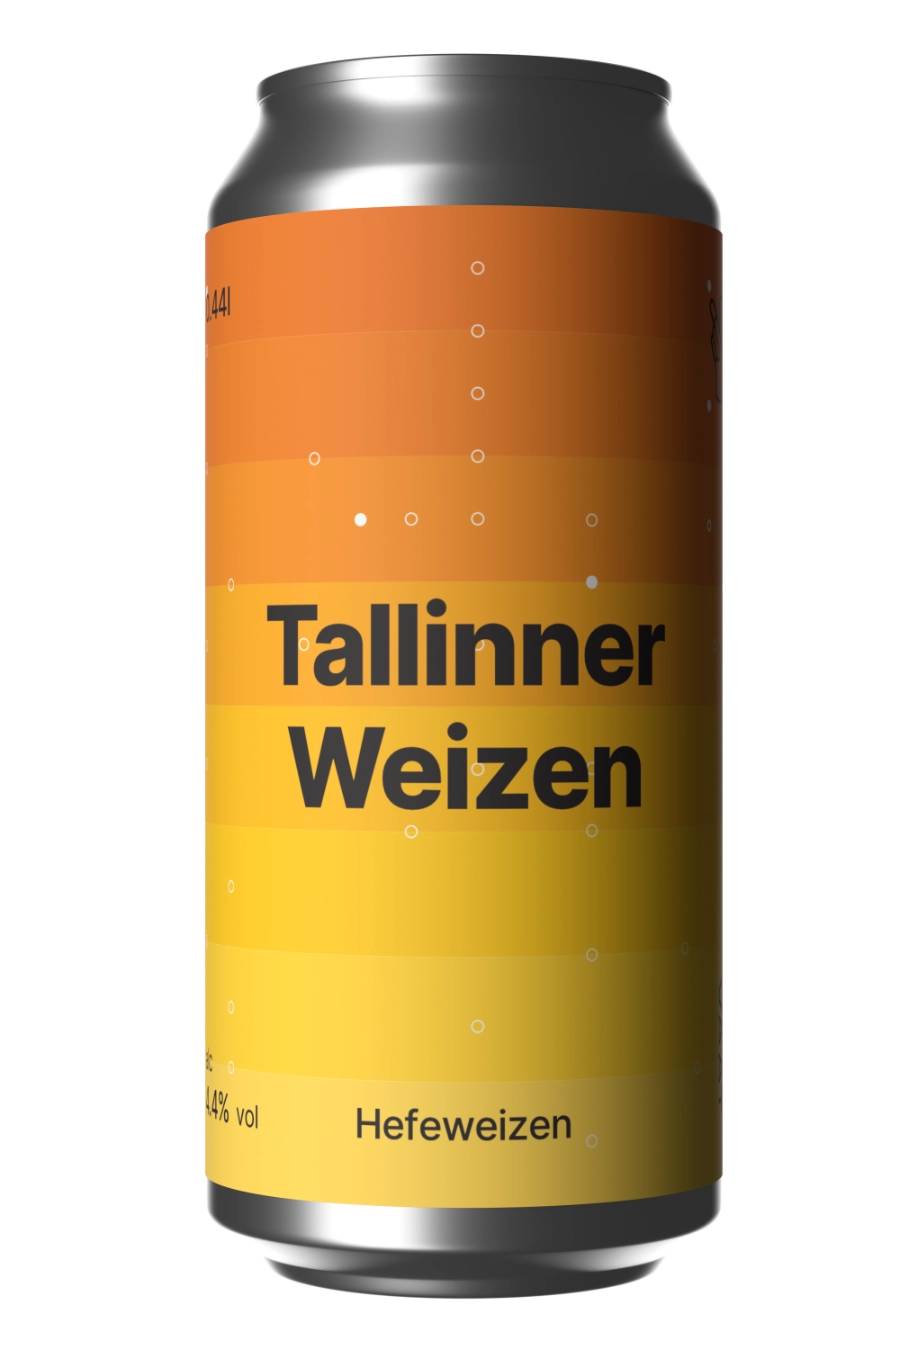 Tallinner Weizen